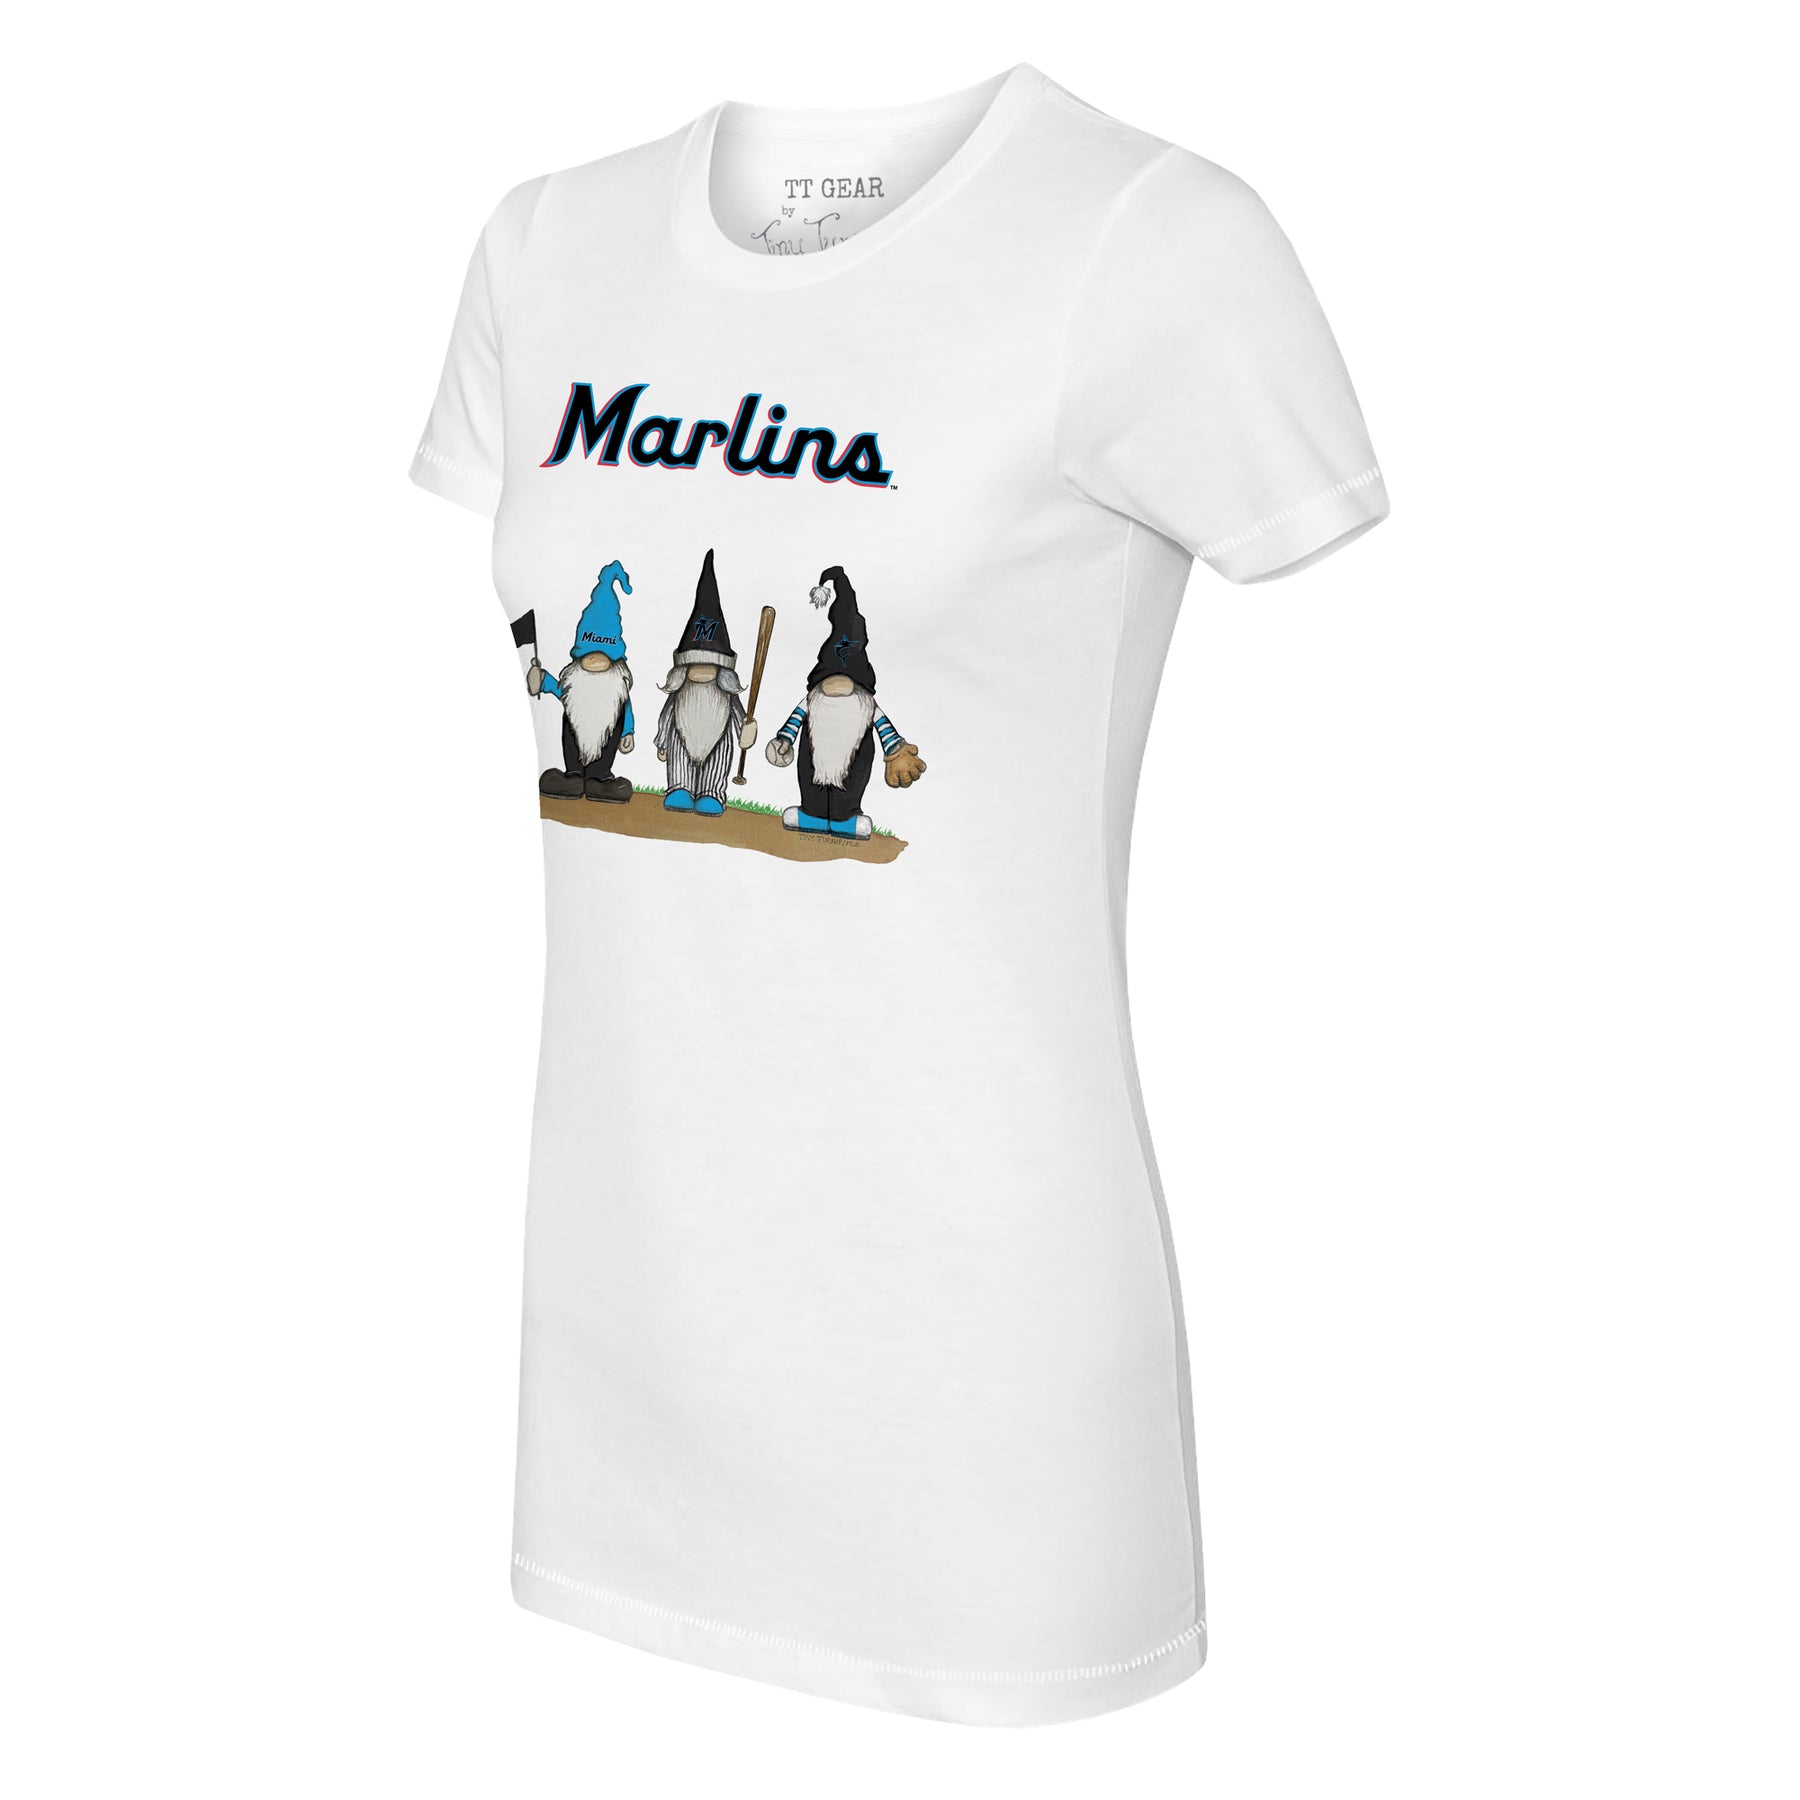 Miami Marlins Gnomes Tee Shirt